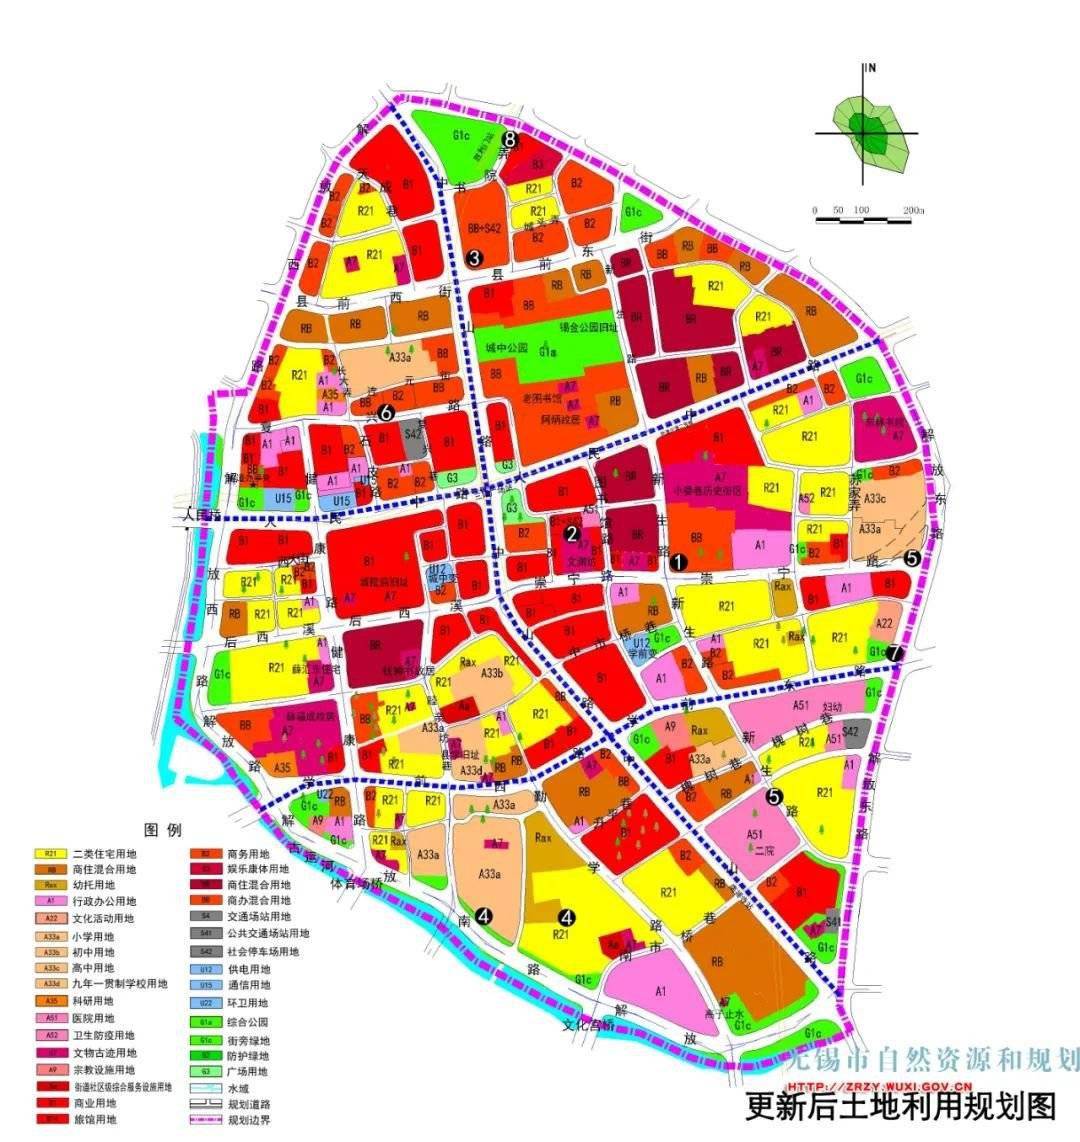 无锡市自然资源和规划局官网发了《无锡市中心城区控制性详细规划崇二